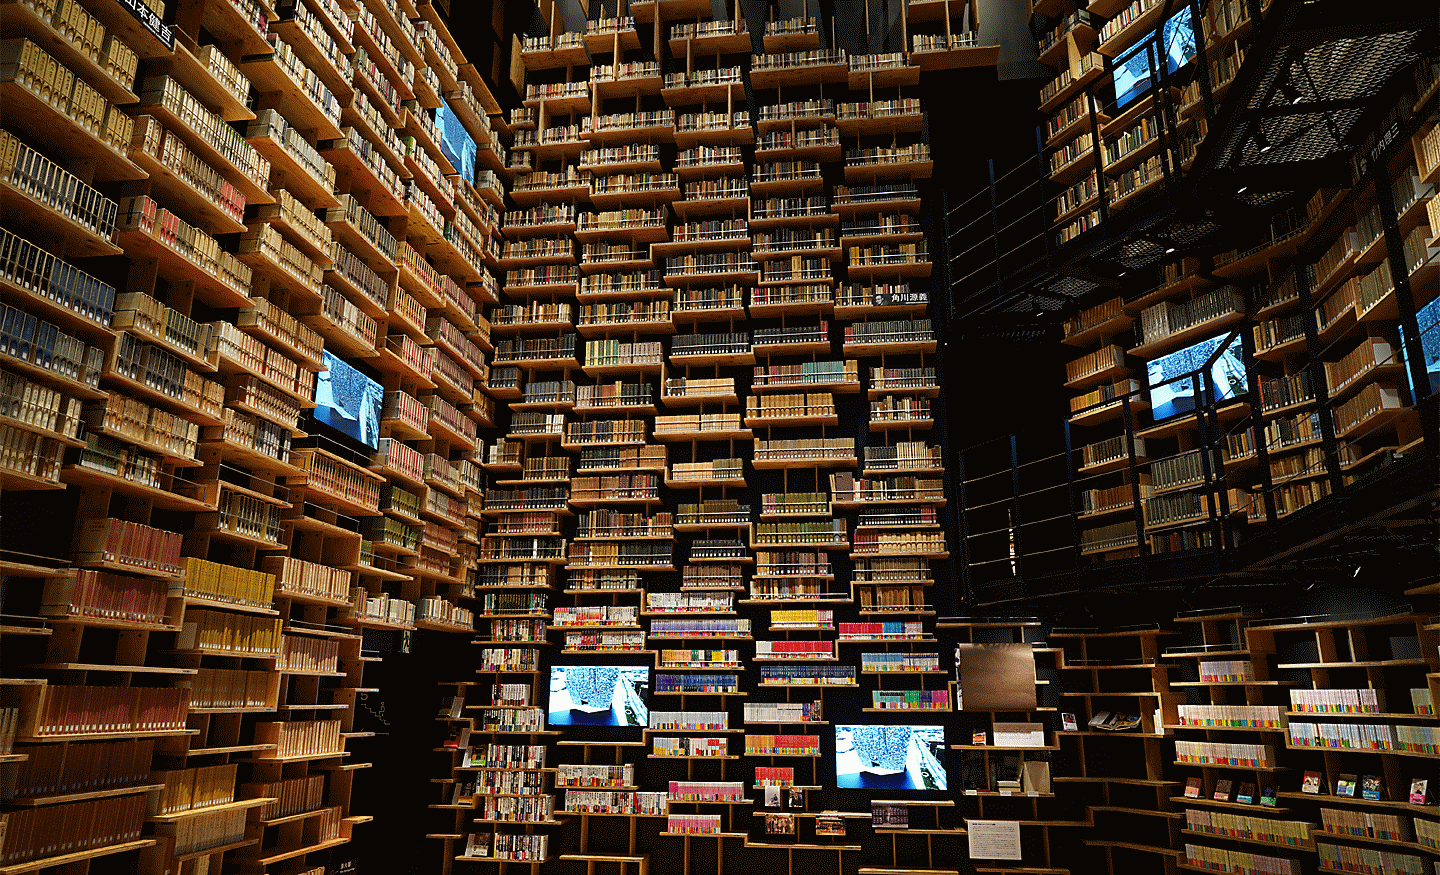 Imagen del interior de una biblioteca capturada con esta lente con alta resolución en todo el encuadre